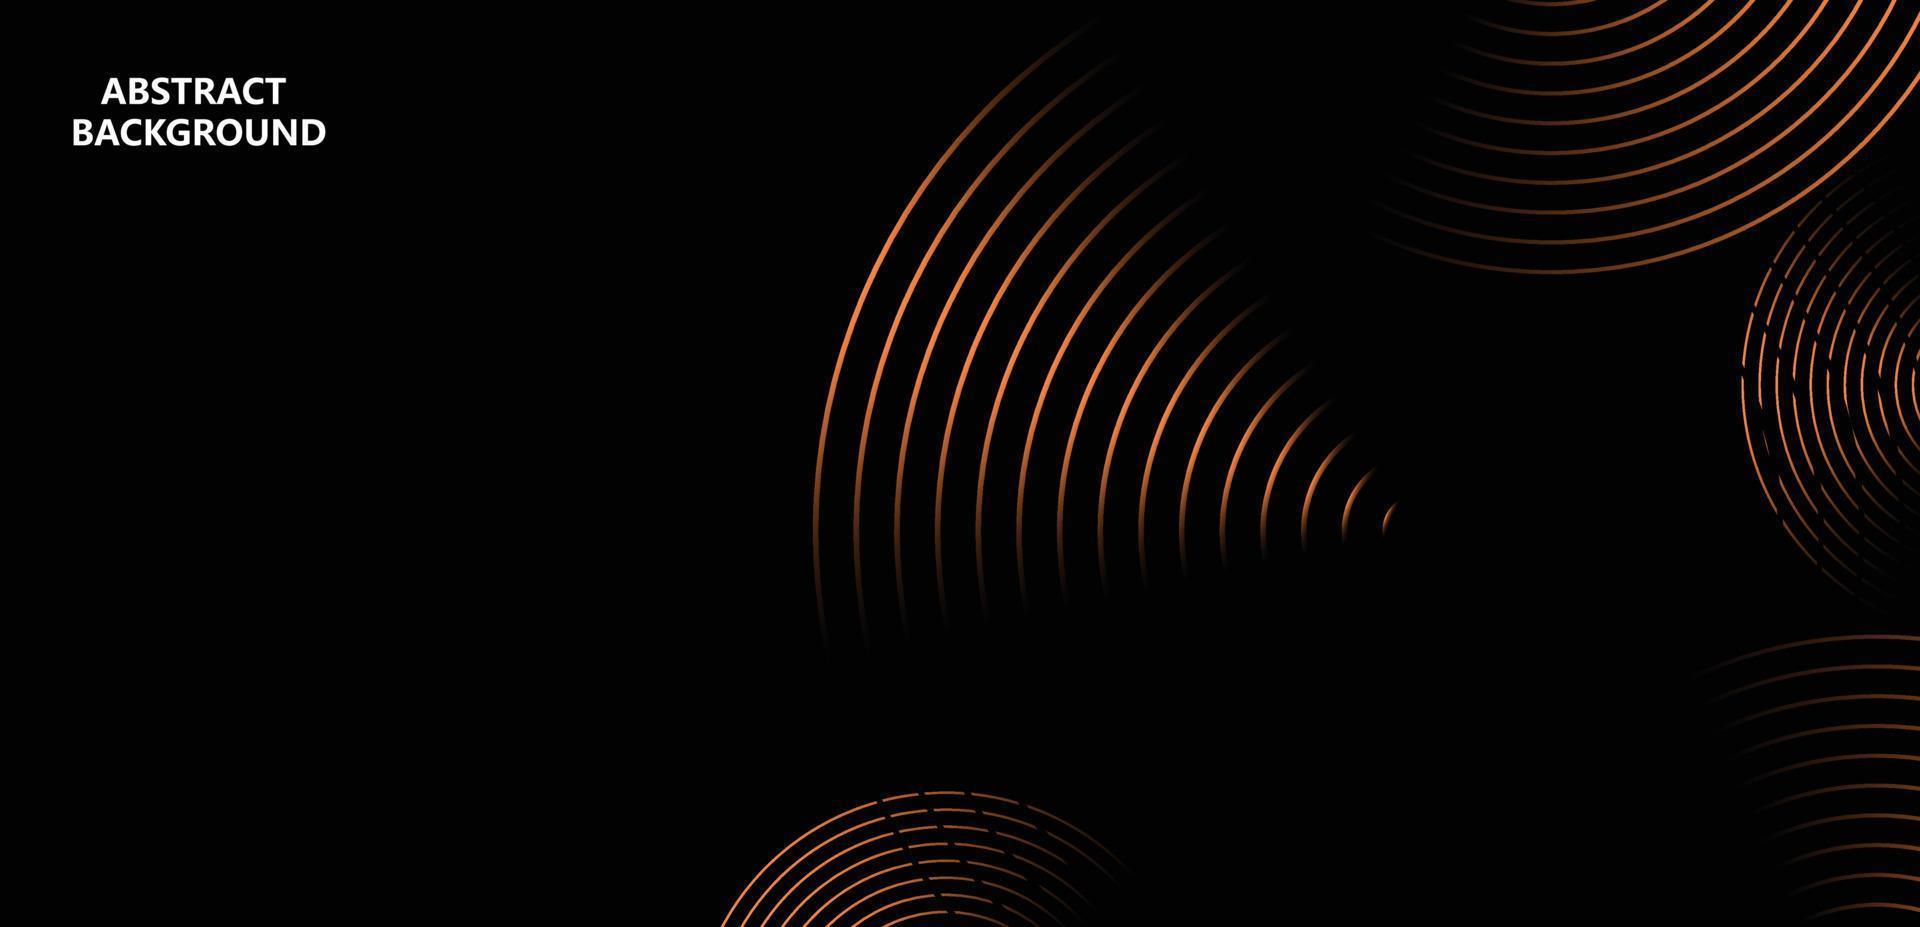 líneas de círculo brillantes abstractas sobre fondo oscuro. concepto de tecnología futurista. plantilla de banner horizontal. traje para póster, portada, pancarta, folleto, sitio web vector